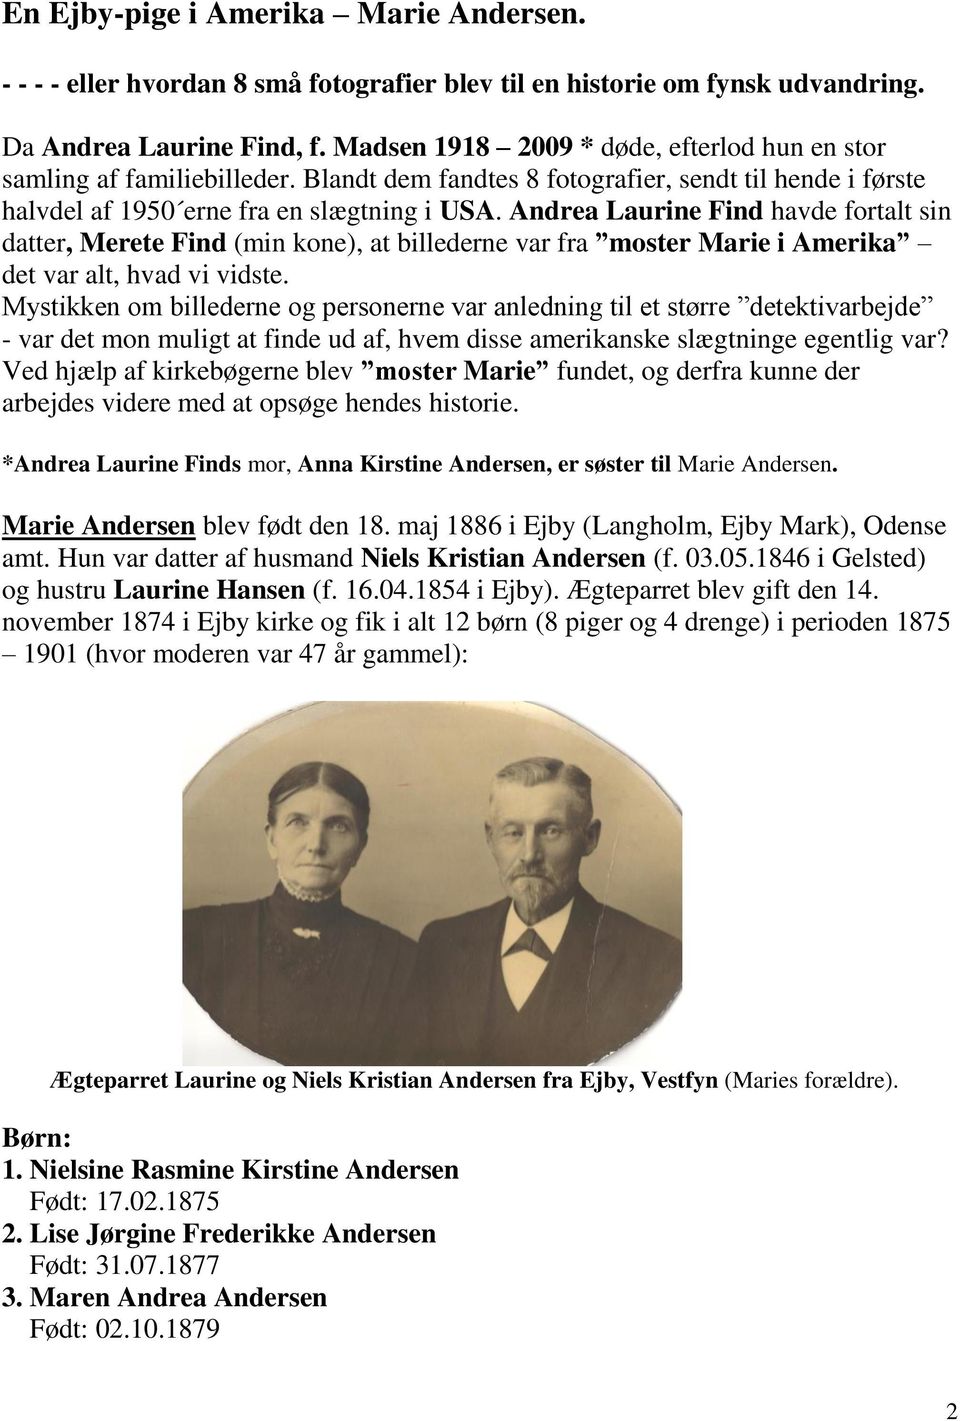 Marie Andersen - en Ejby pige i Amerika. - PDF Free Download